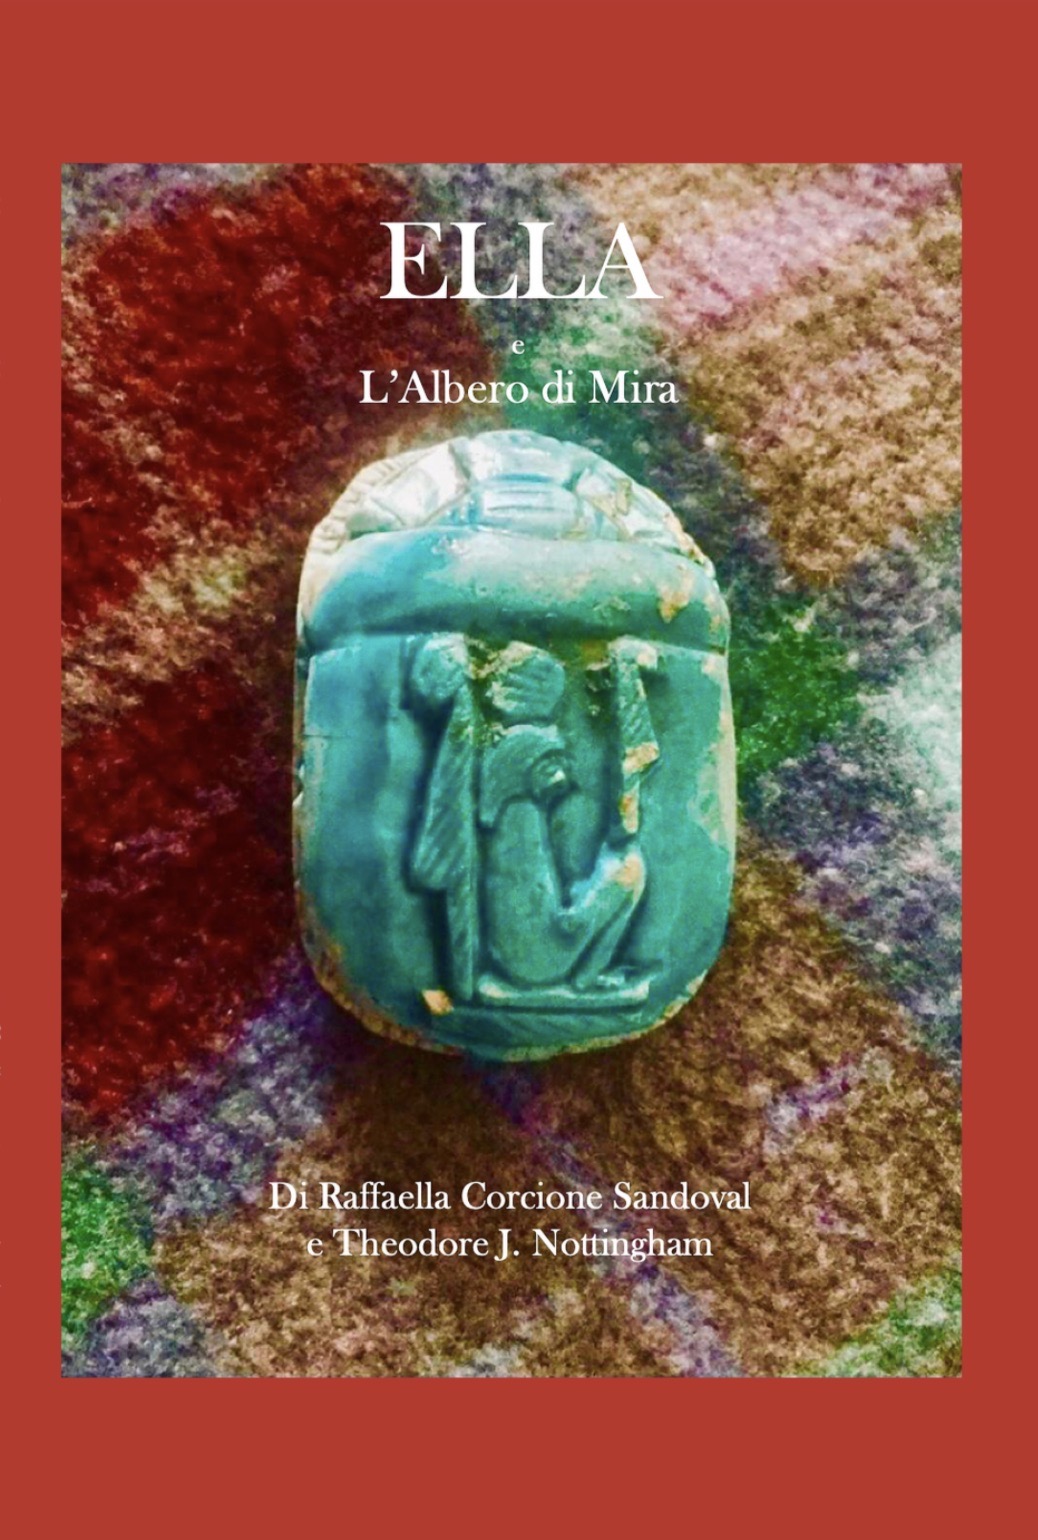 Raffaella Corcione Sandoval presenta il romanzo “Ella e l’Albero di Mira”